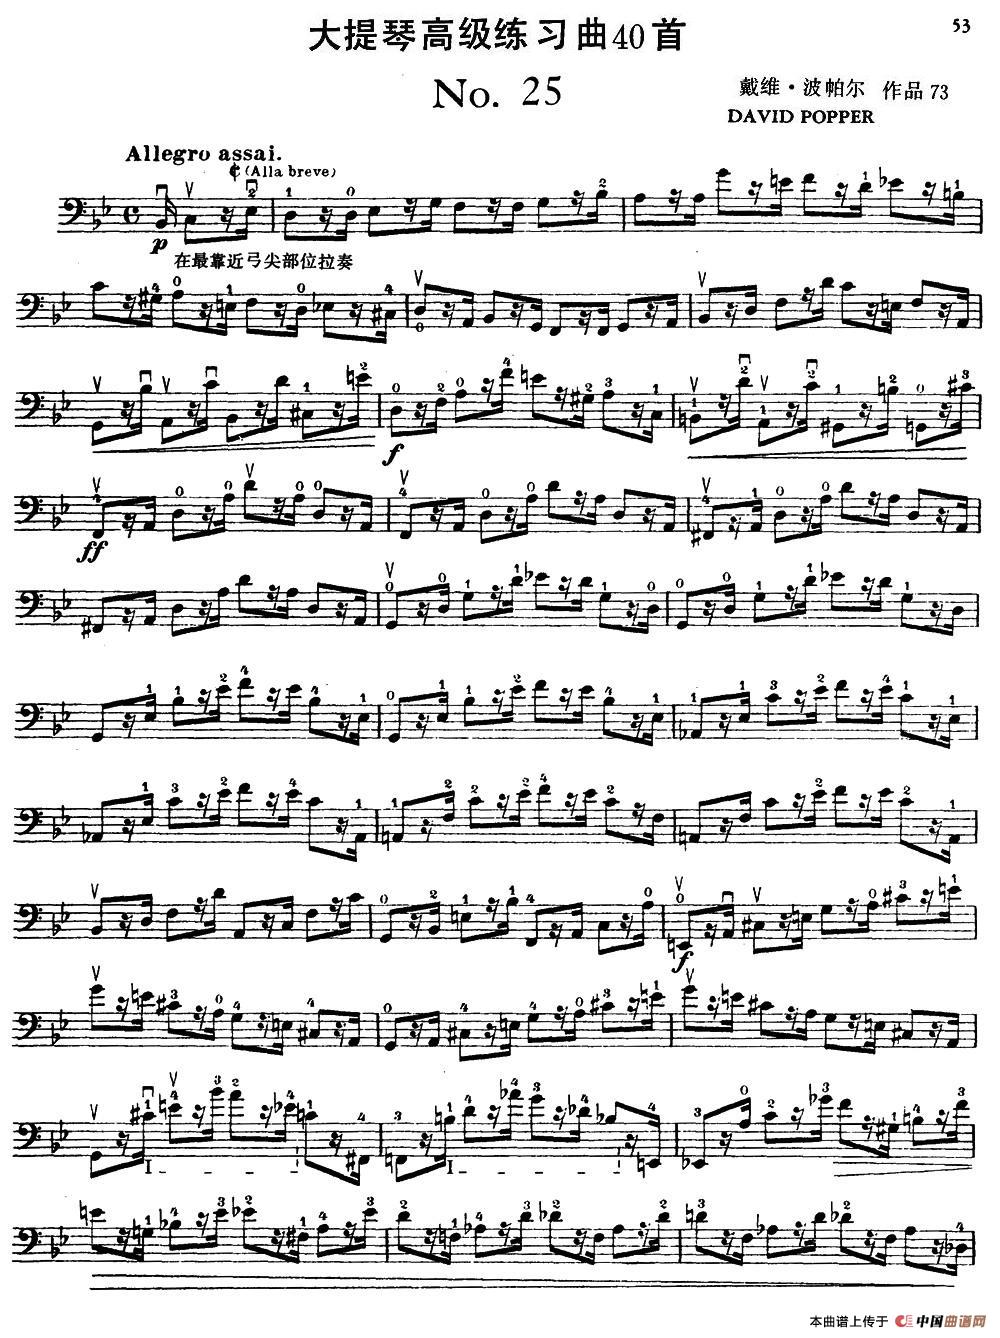 大提琴高级练习曲40首 No.25小提琴谱